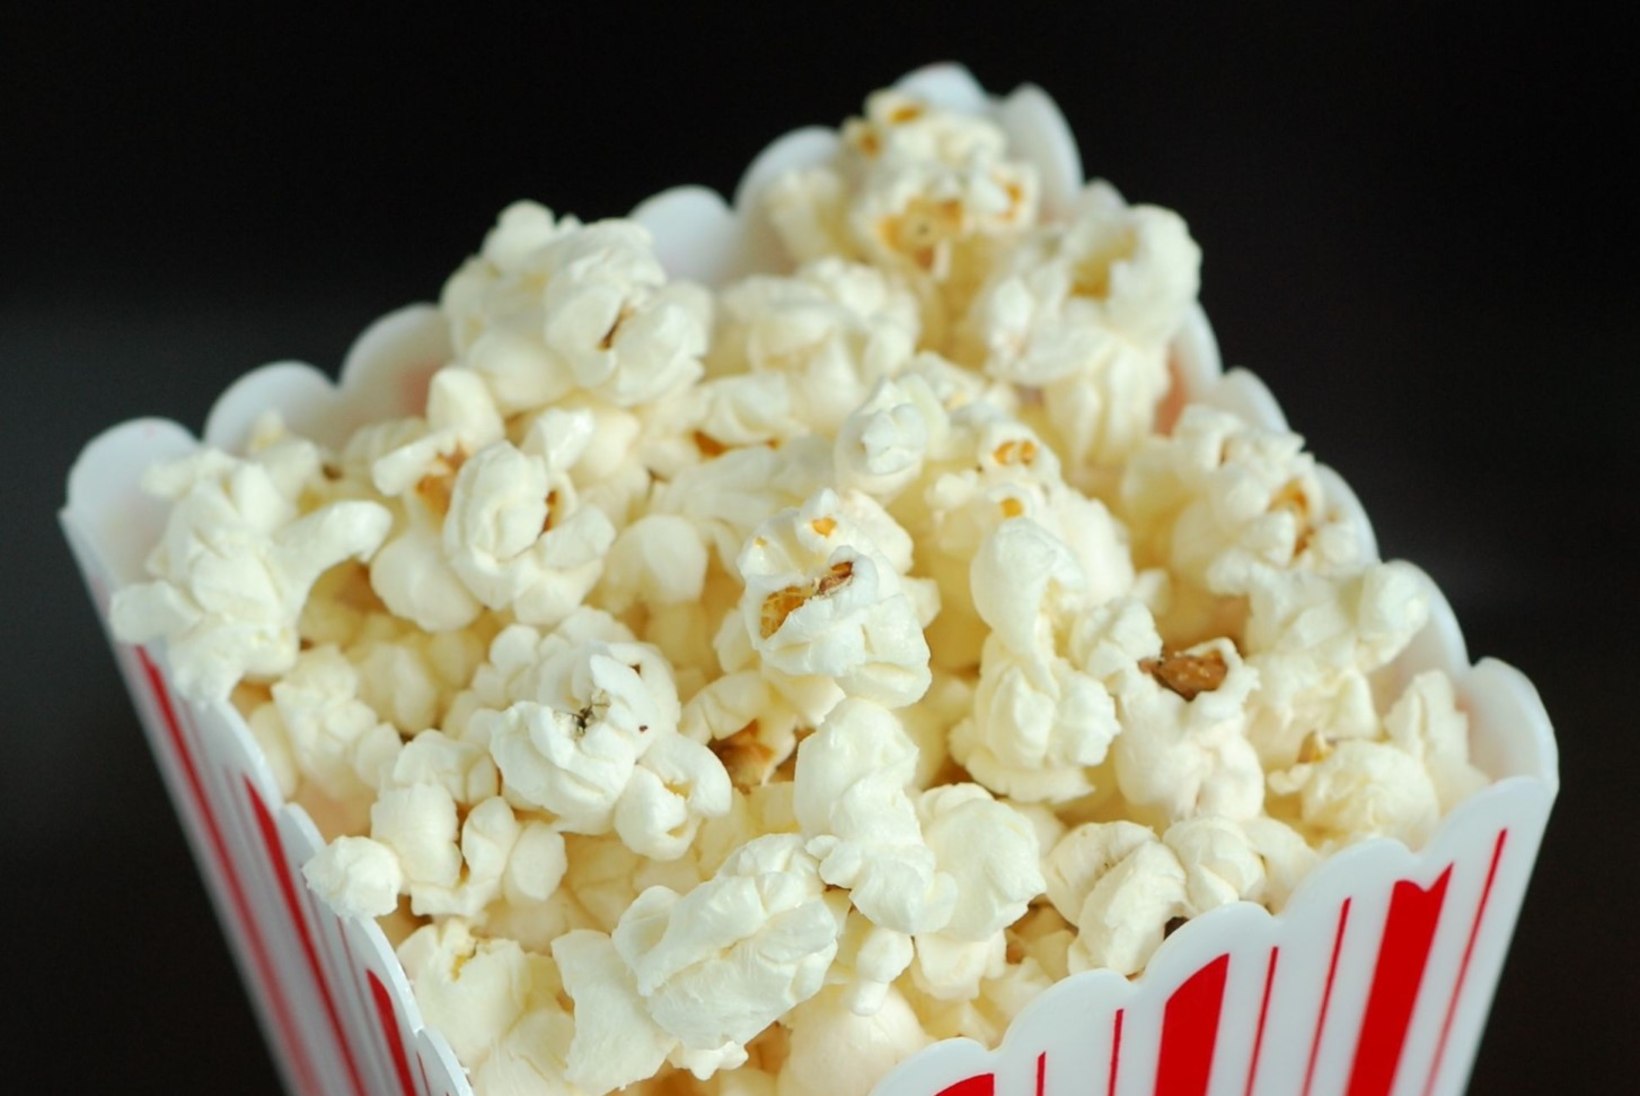 PÕLETAVAD FILMIKÜSIMUSED ehk miks me sööme kinos popkorni ja kust tuli punane vaip?